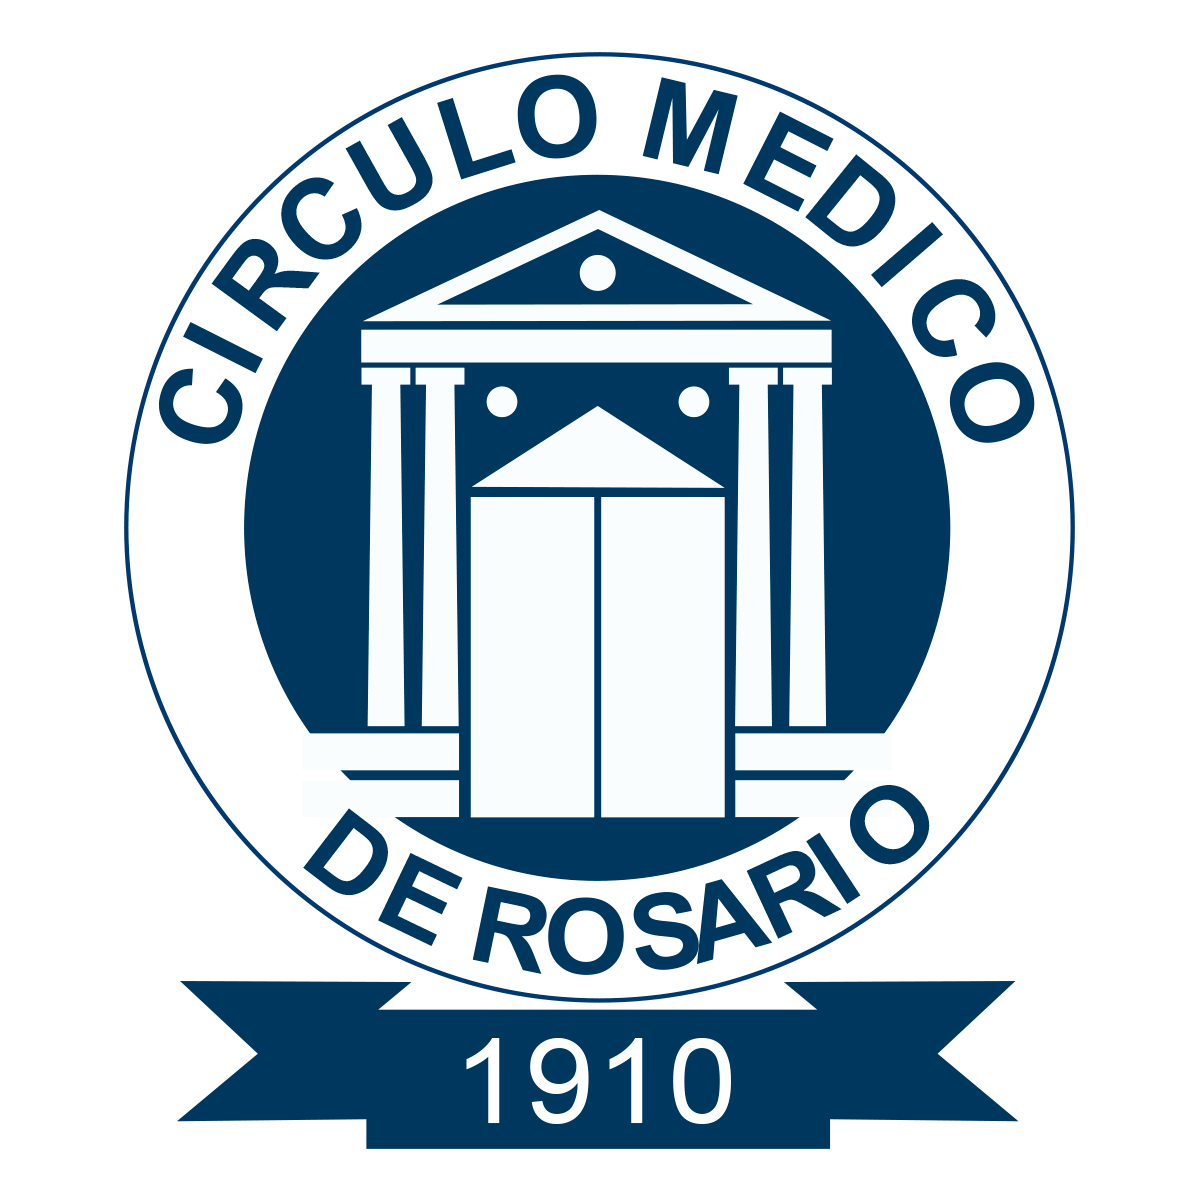 Circulo Médico Rosario